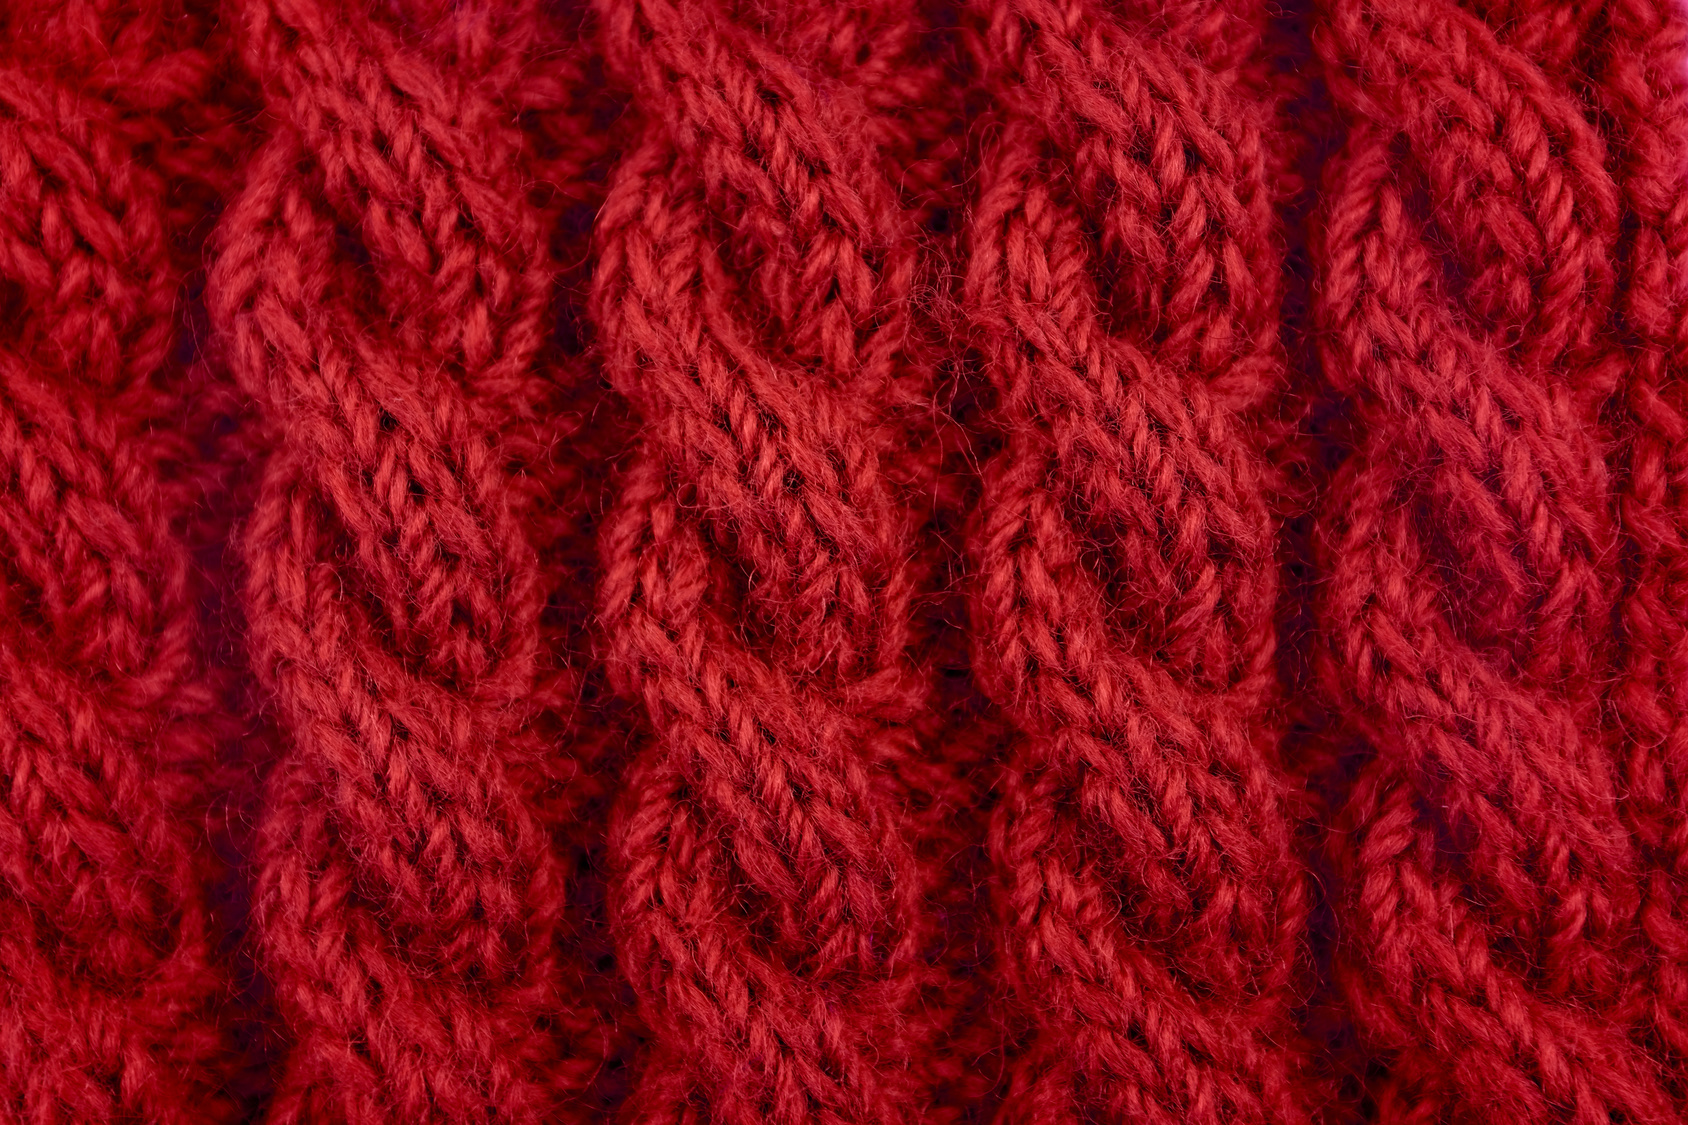 La laine gratte lorsque la fibre est épaisse et rigide. © sarahdoow - Fotolia.com